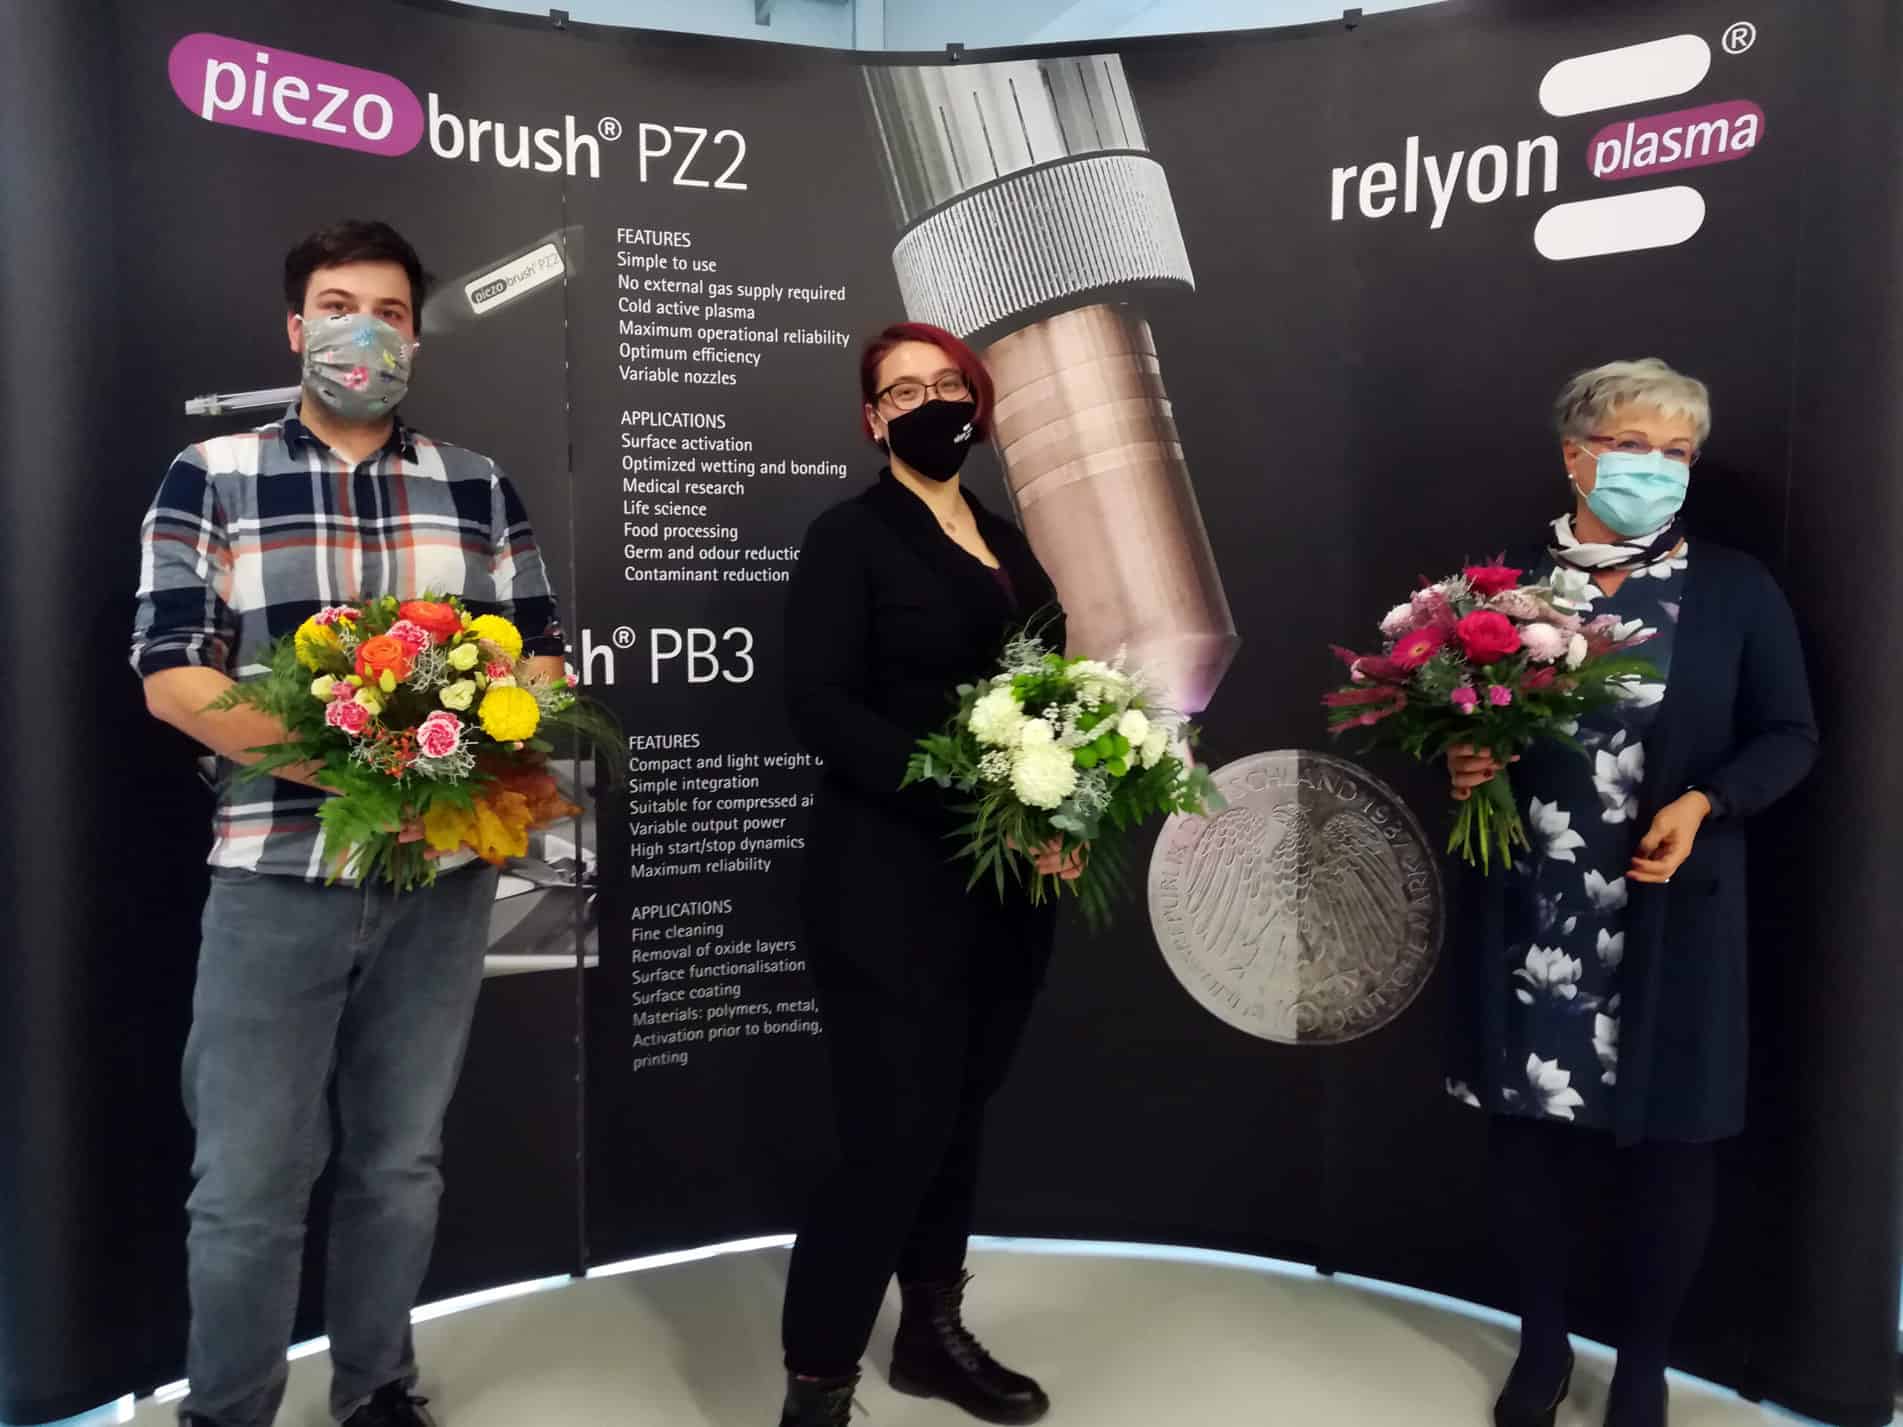 Qualitätsmanagement Team relyon plasma (von links nach rechts): Andreas Ammon , Katharina Bayer, Geri Richter  nach der erfolgreichen DIN EN ISO 13485 Zertifizierung